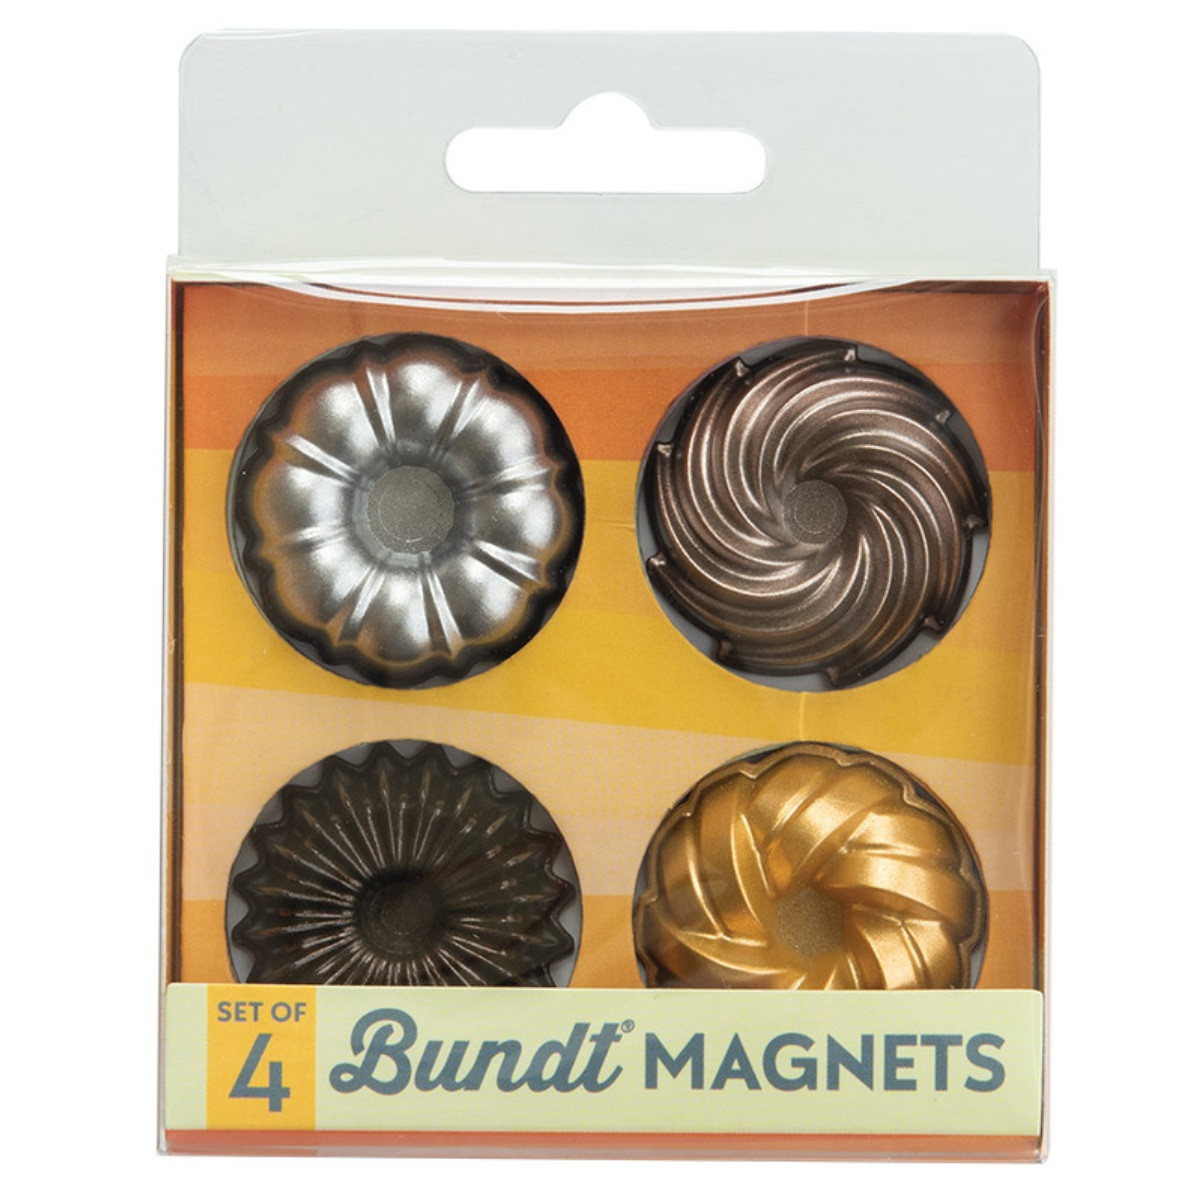 Nordic Ware Bundt Magneten Set/4